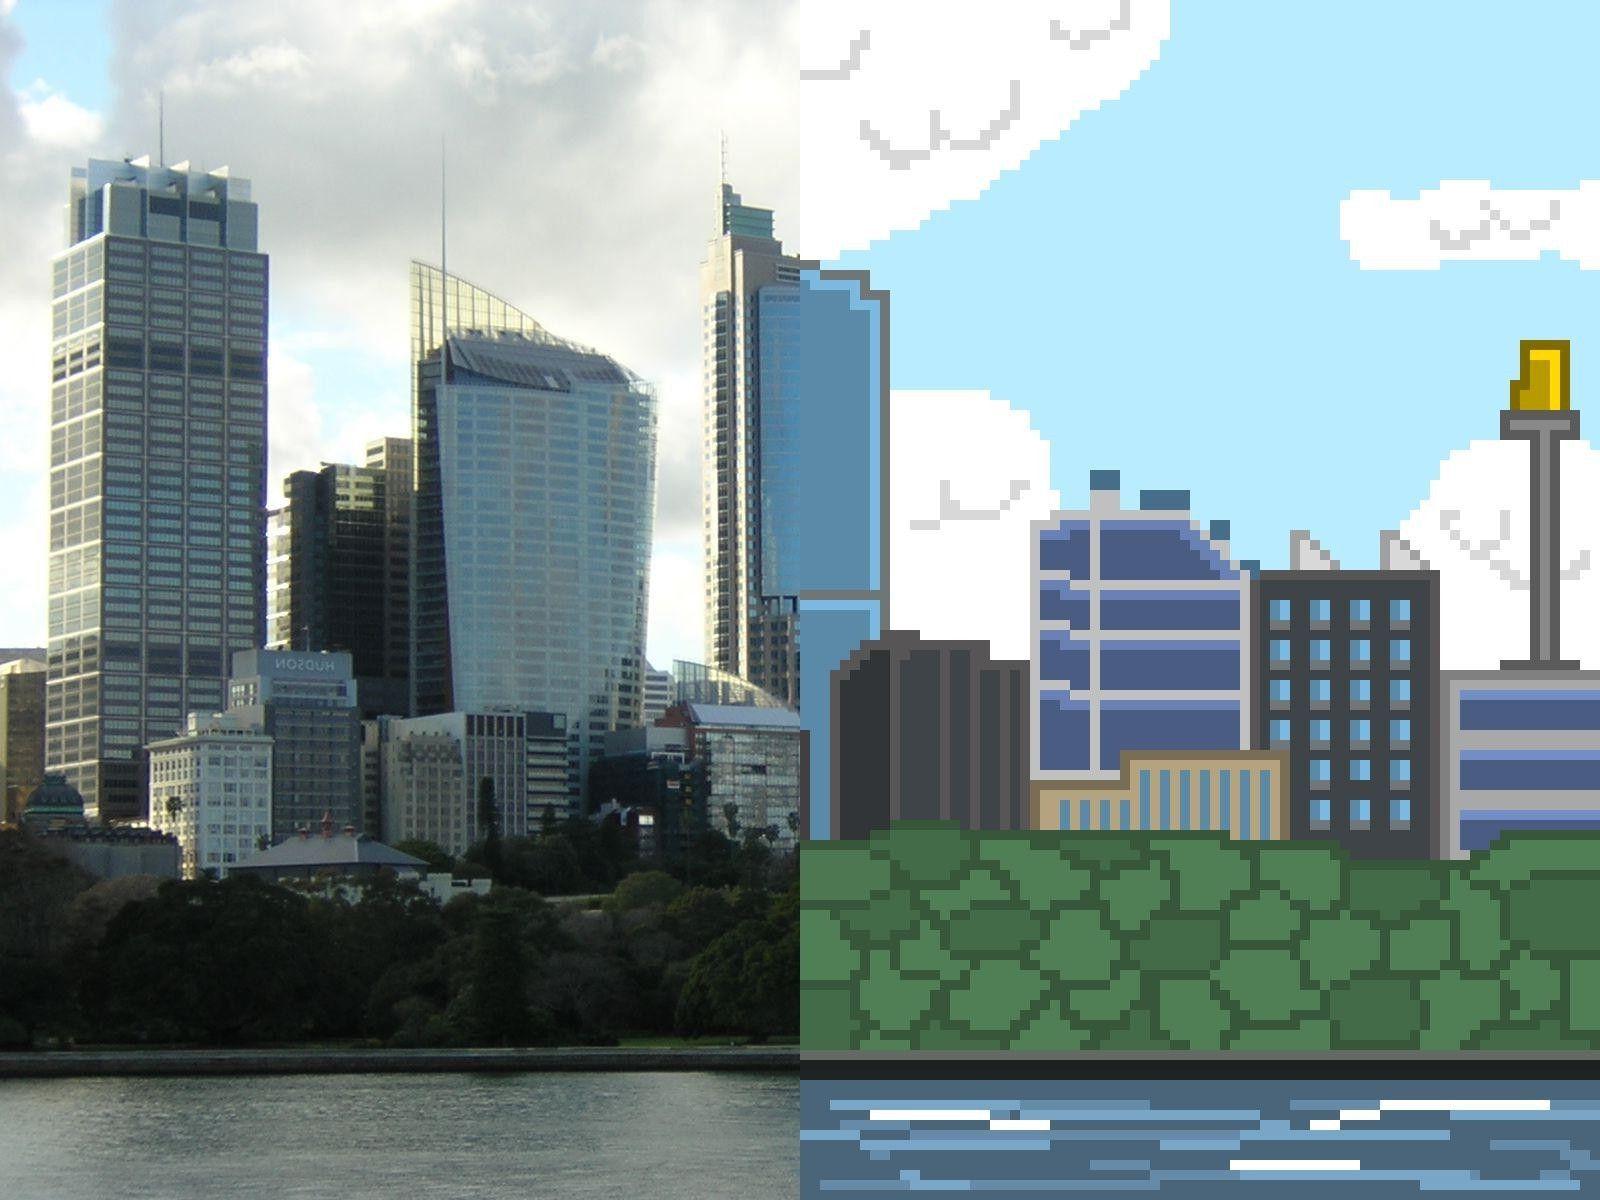 Pixel Art Cities